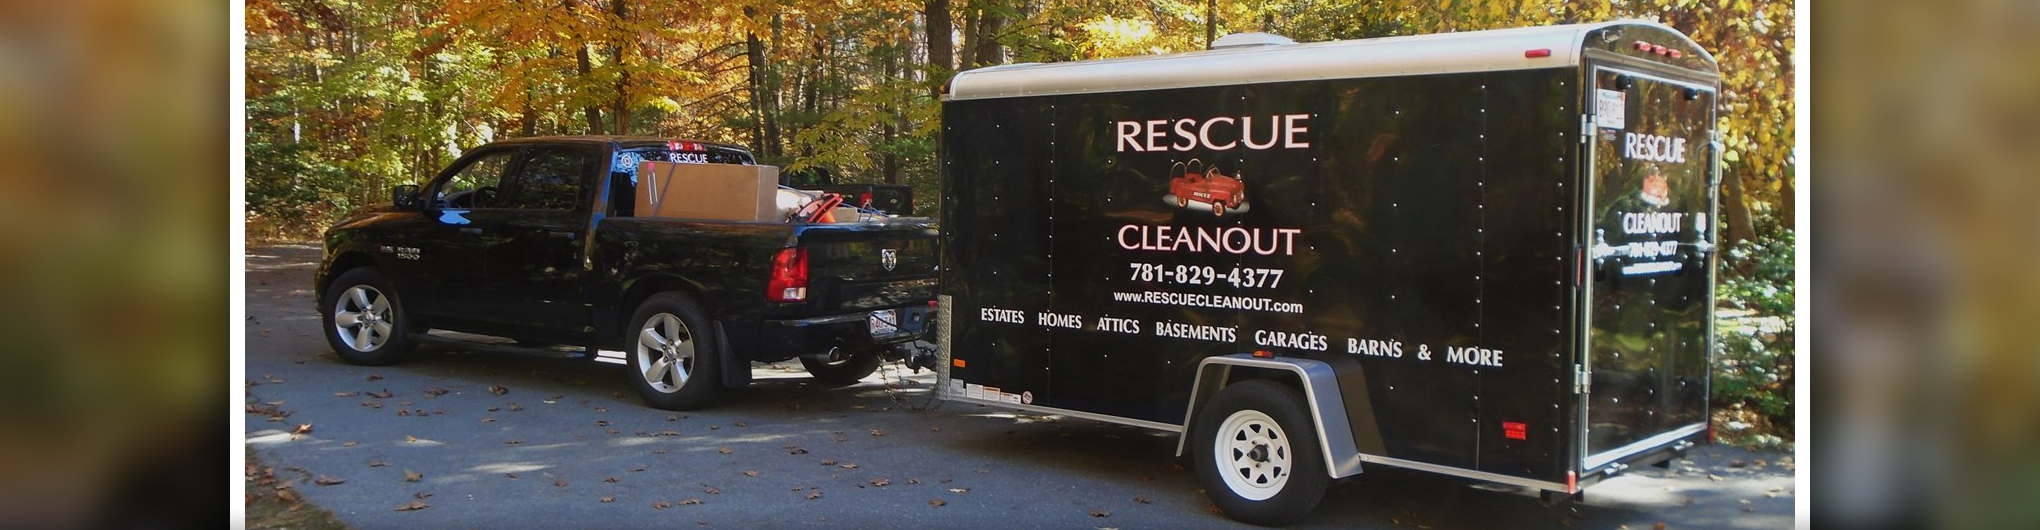 Rescue Cleanout Services